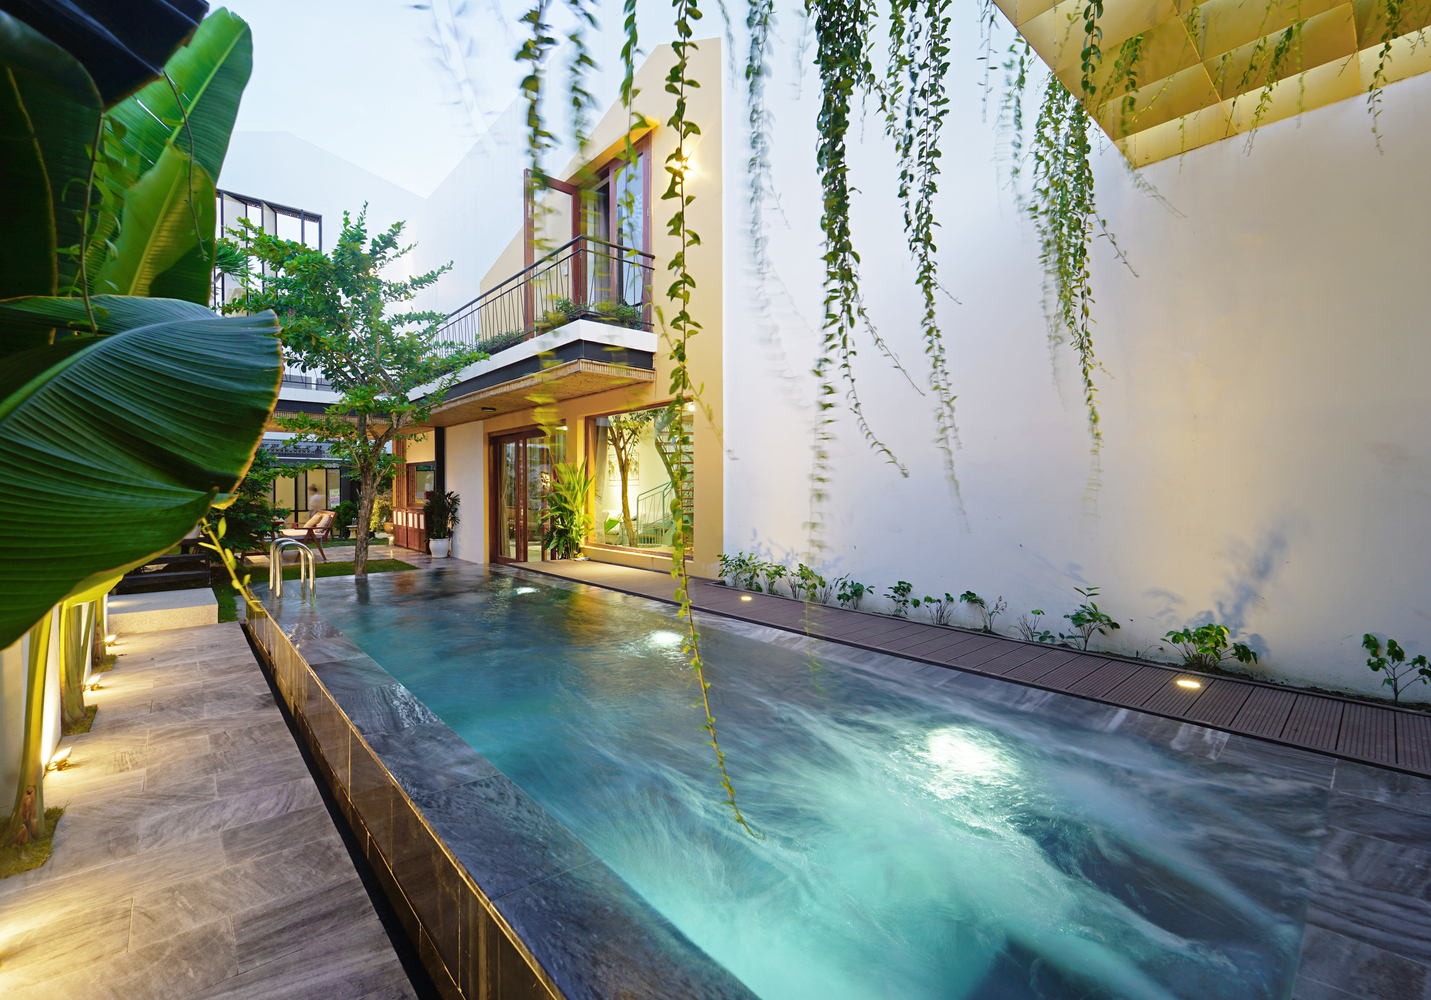 Bên cạnh những ưu điểm trên thì ngôi nhà còn tạo được điểm nhấn nhờ thiết kế hồ bơi trải dài bên hông nhà, lát đá xanh lam mát rượi. 